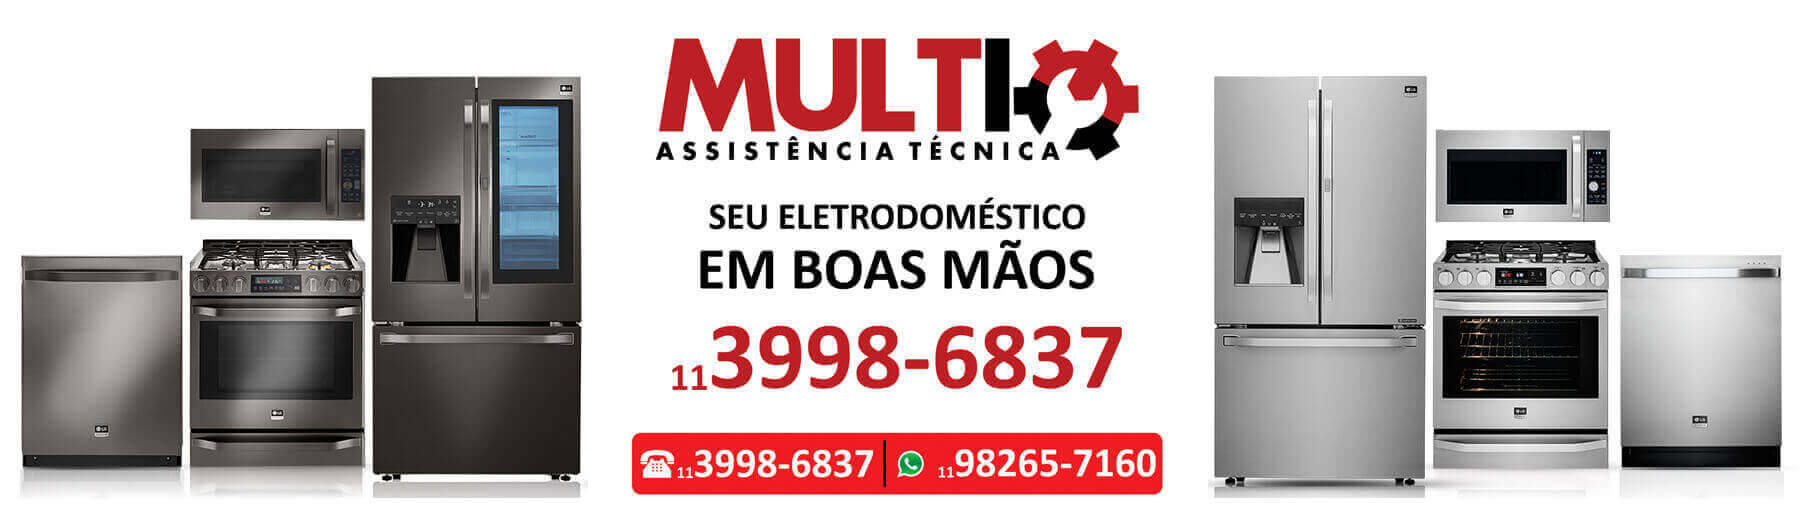 Serviços técnicos Vila Gustavo importados e nacionais